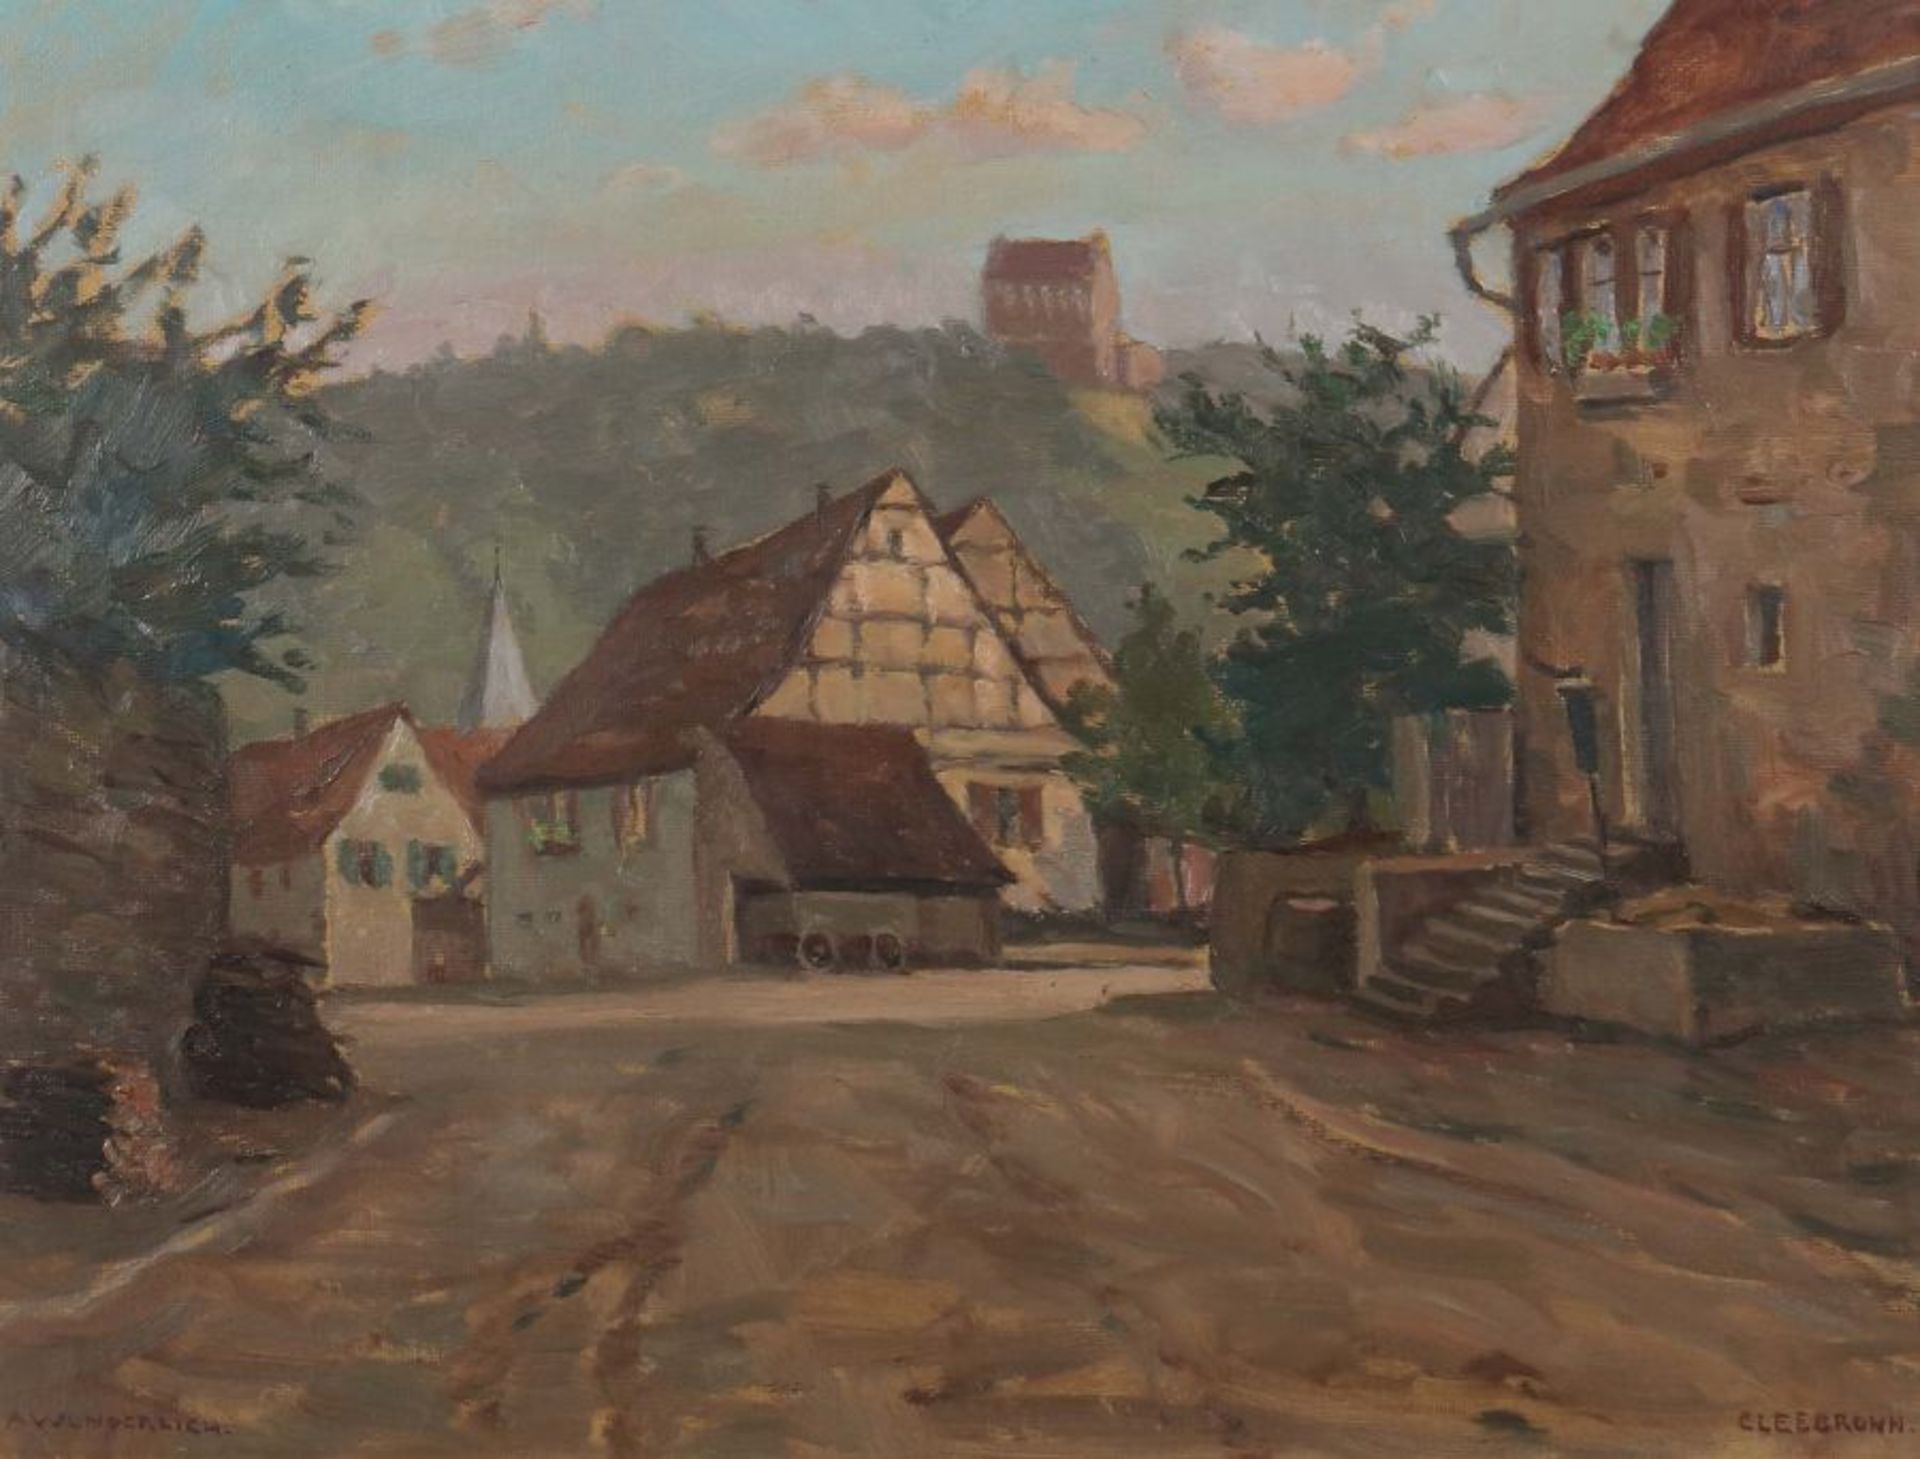 Wunderlich, Albert 1876 - 1949, war Maler in Stuttgart. "Cleebronn", eine Dorfstraße, unten links